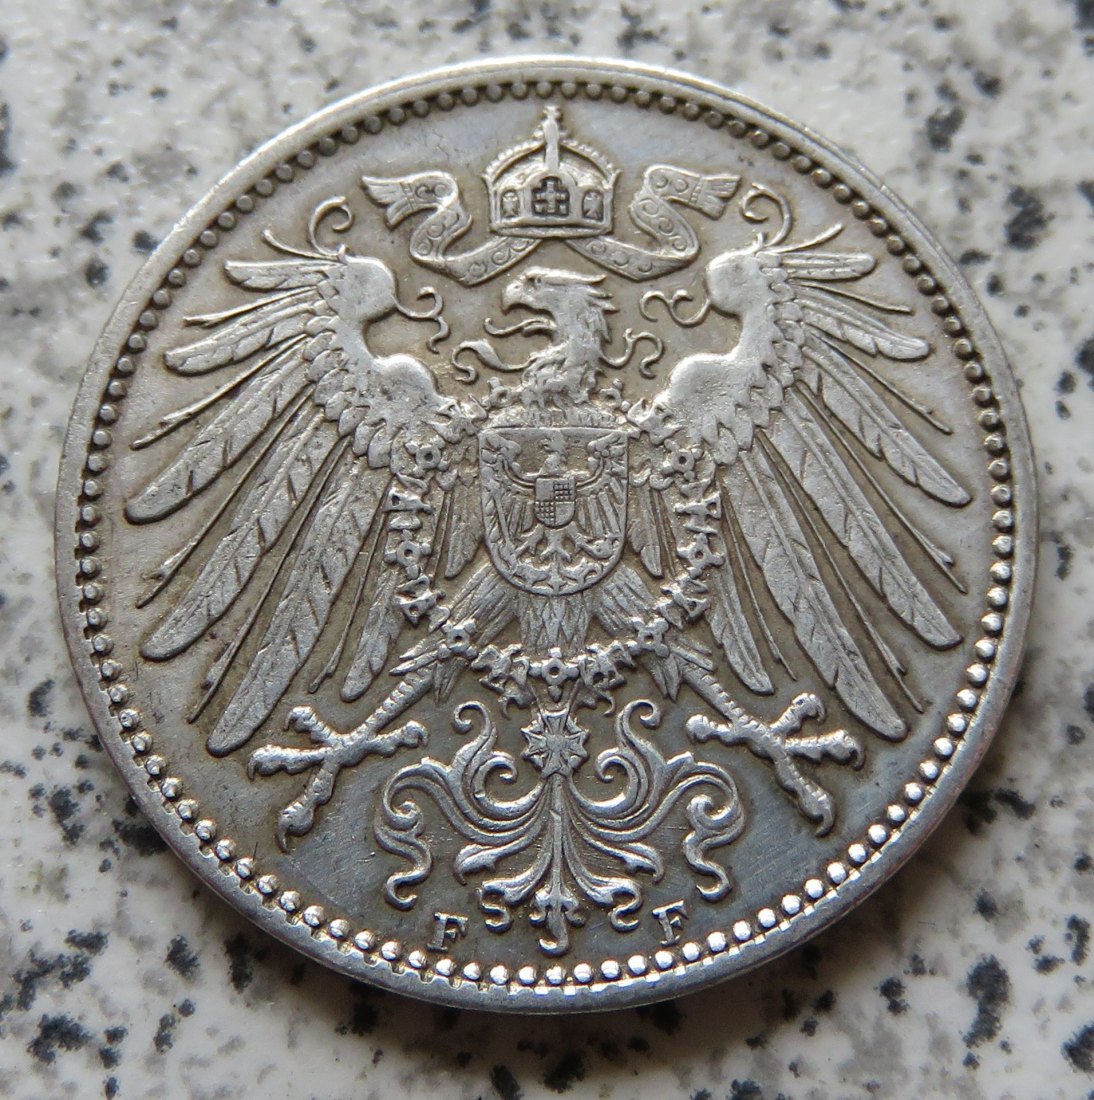  Kaiserreich 1 Mark 1915 F   